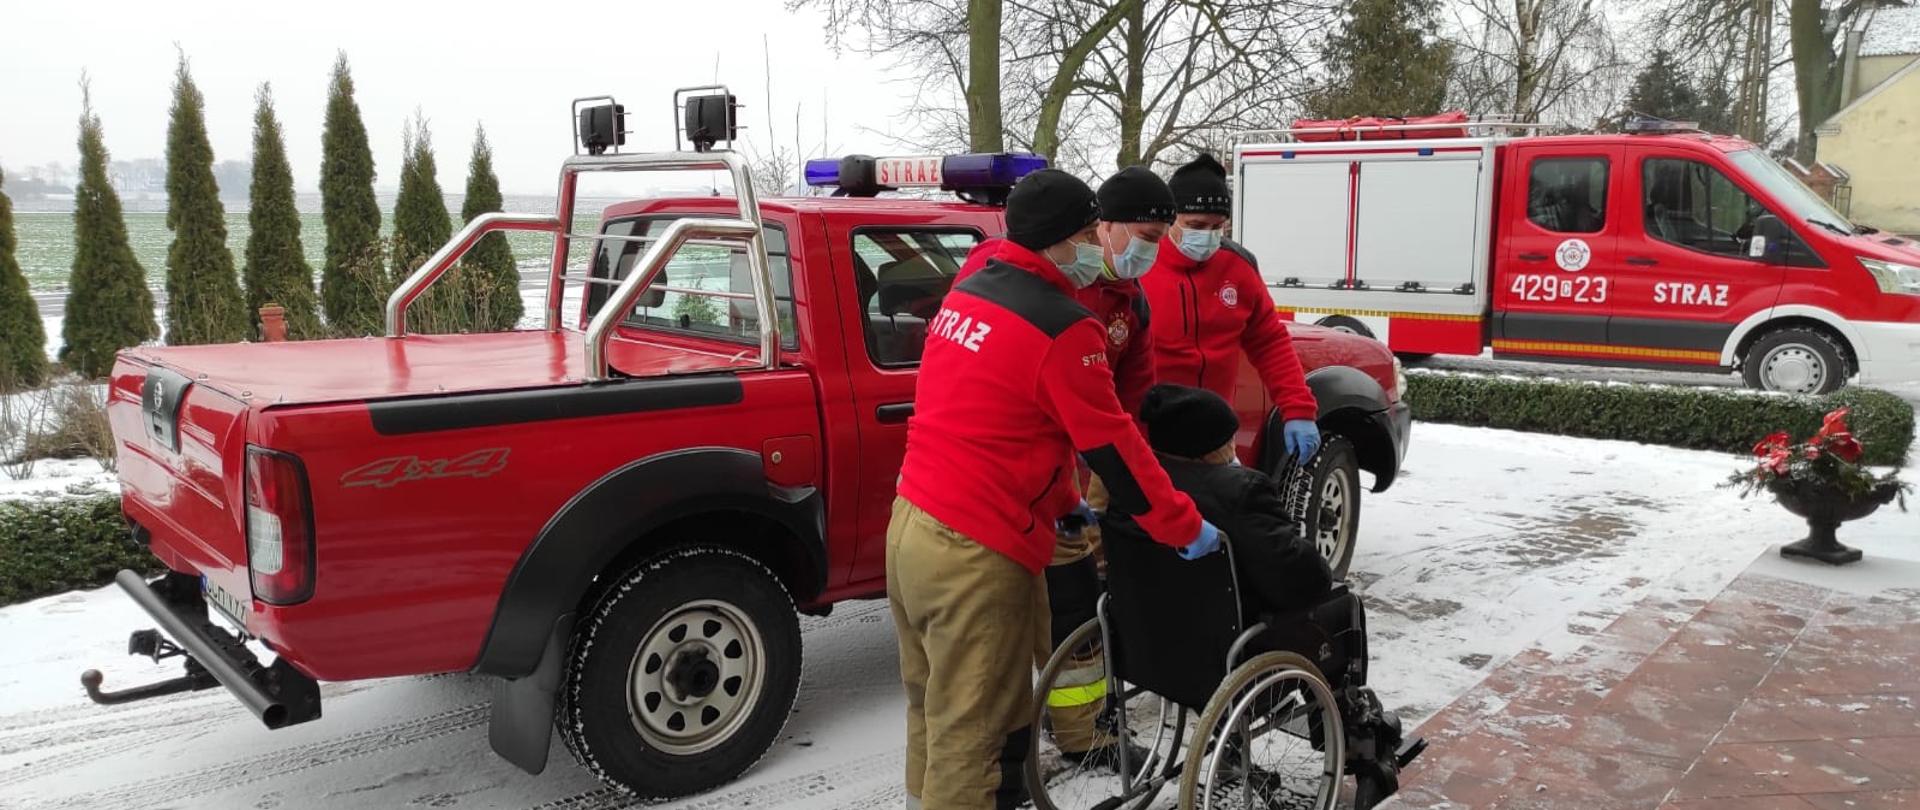 Na zdjęciu trzech strażaków przygotowuje się do wniesienia po schodach starszej osoby poruszającej się na wózku. W tle dwa pojazdy pożarnicze. Na zewnątrz panuje aura zimowa.